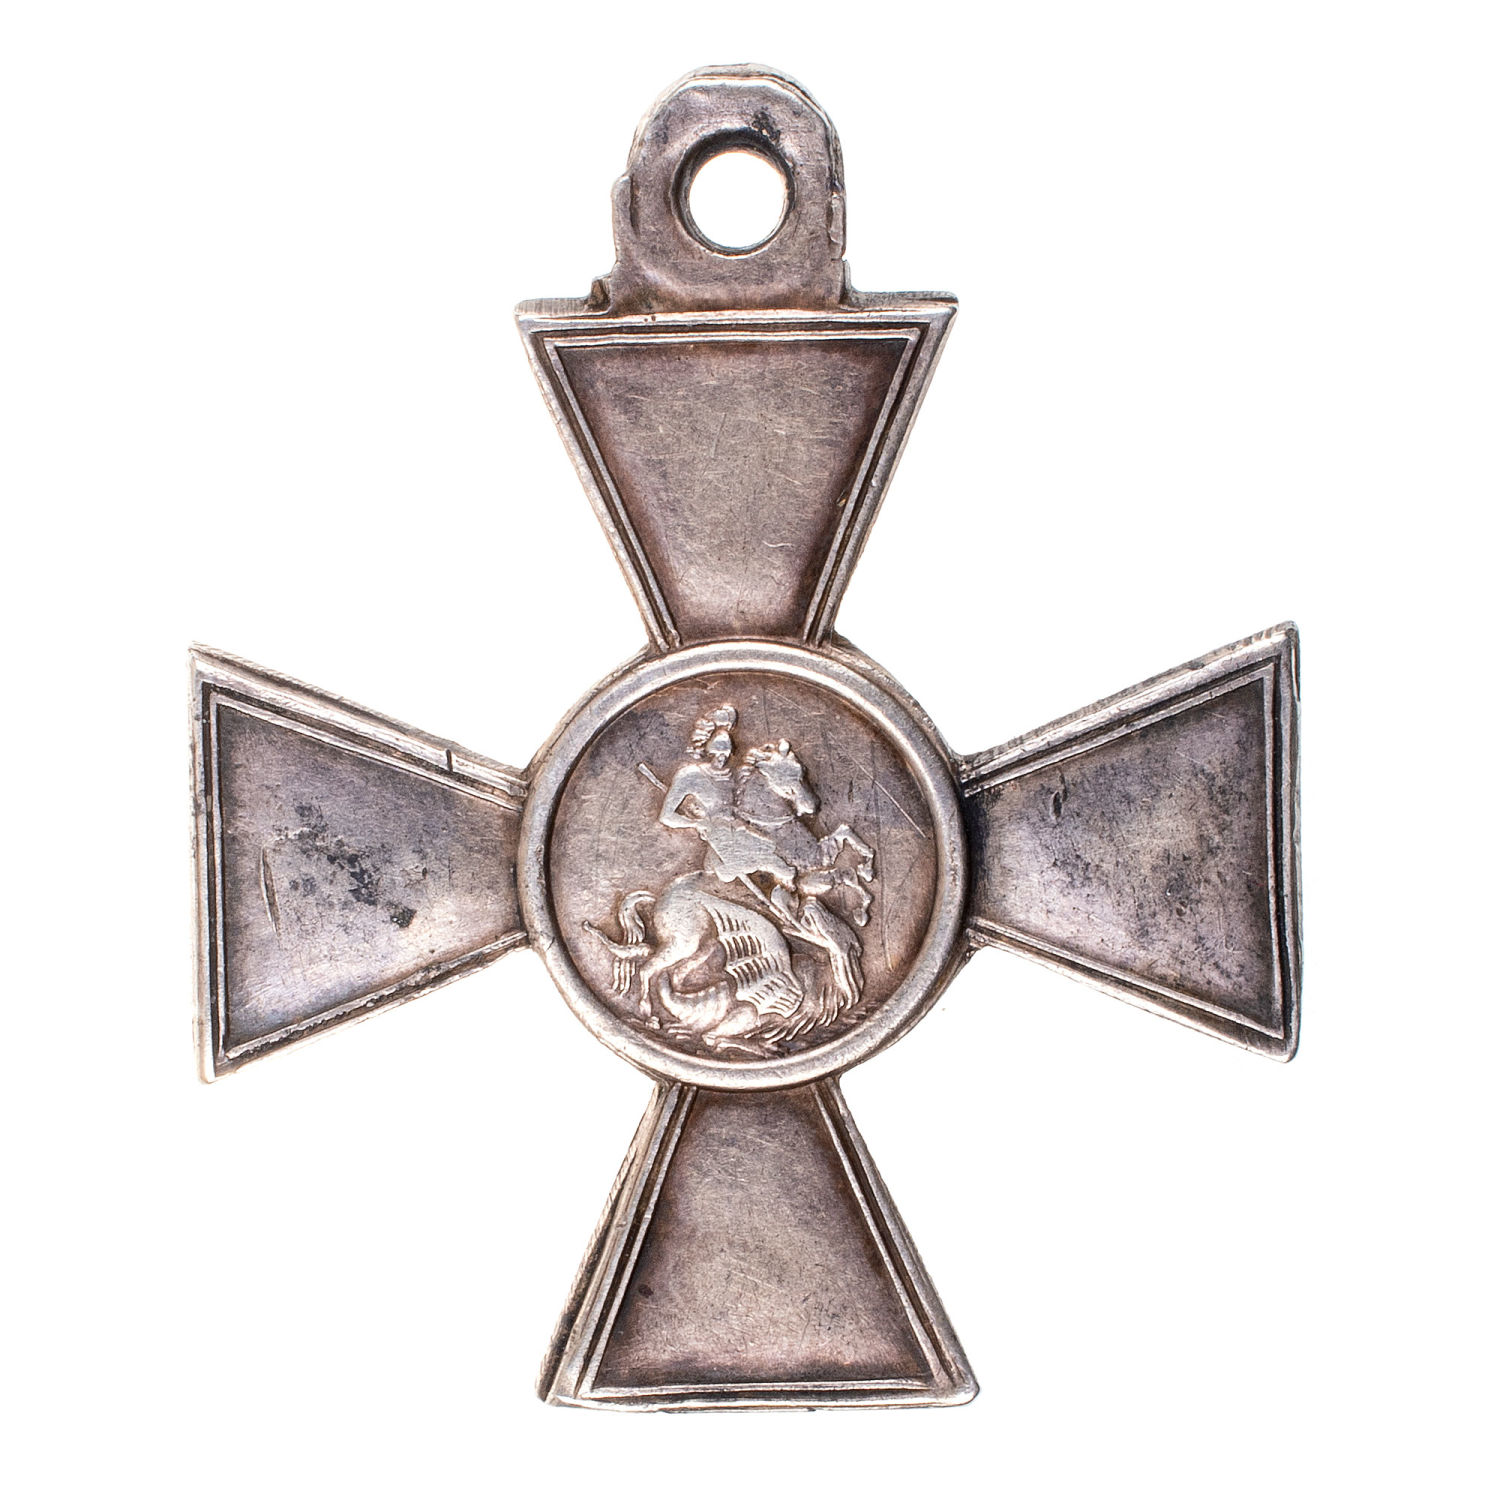 Знак Отличия Военного Ордена 4 ст 84.733 (101 пехотный Пермский полк).